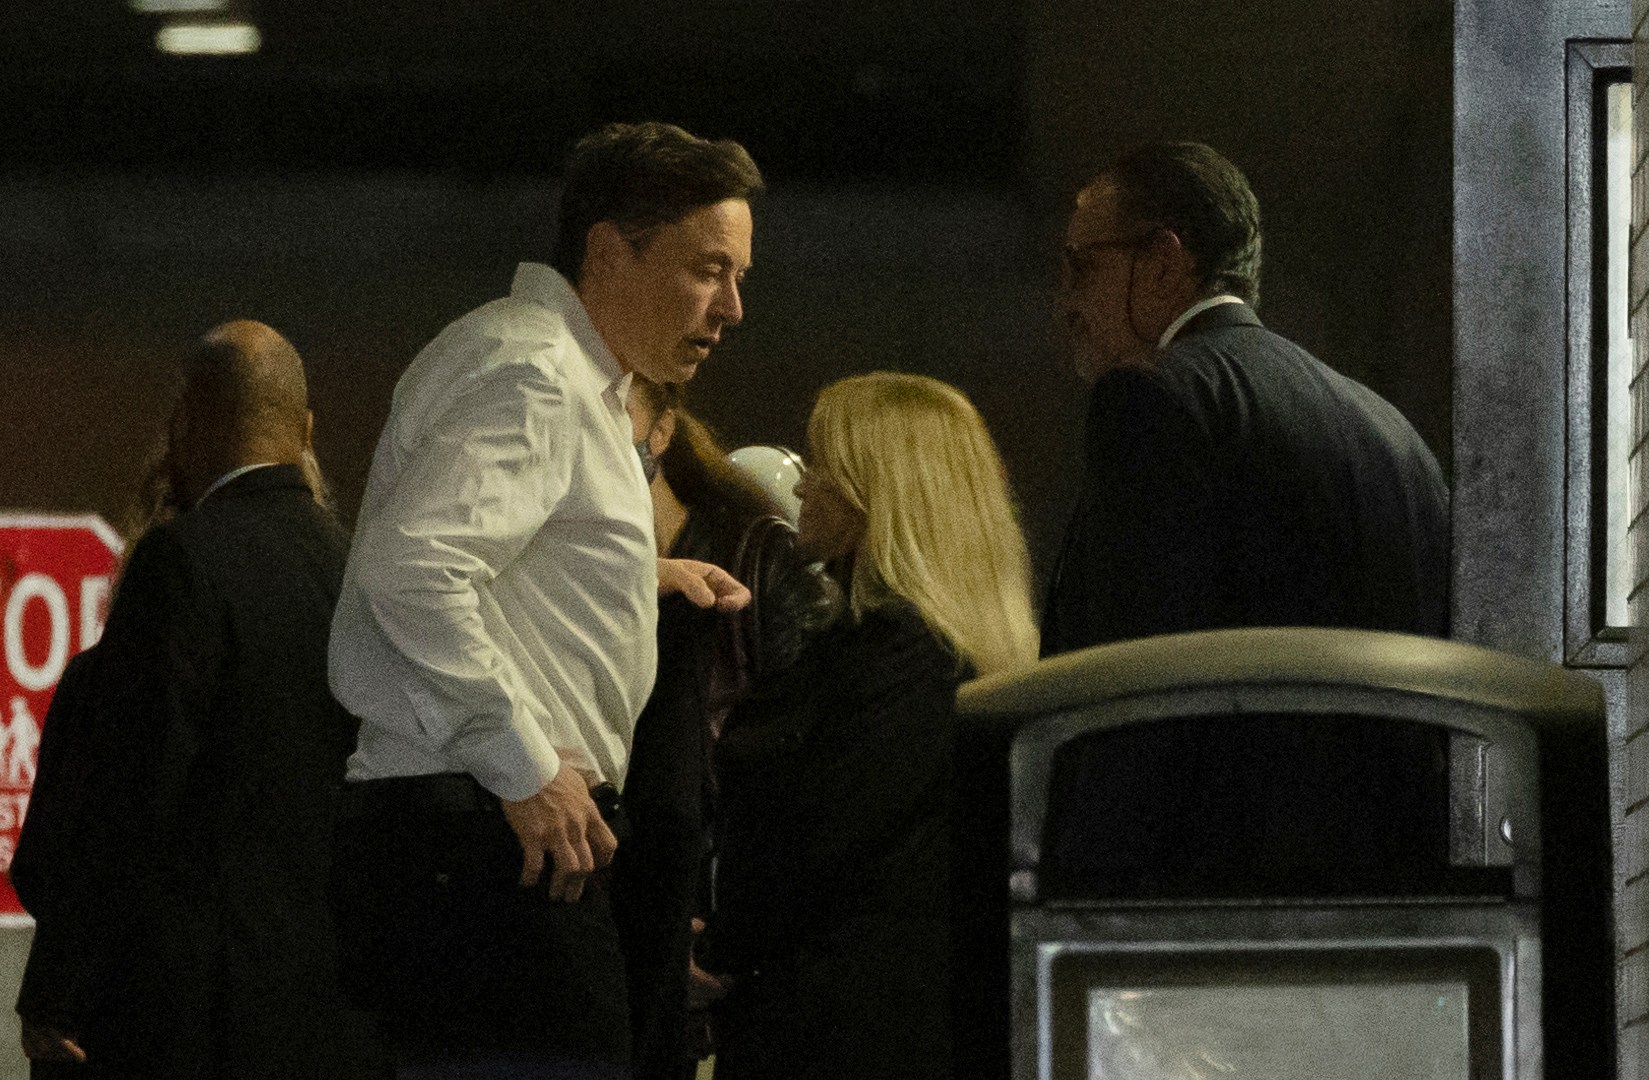 El próximo drama de Elon Musk: un experimento con sus tweets de Tesla |  Noticias económicas y empresariales